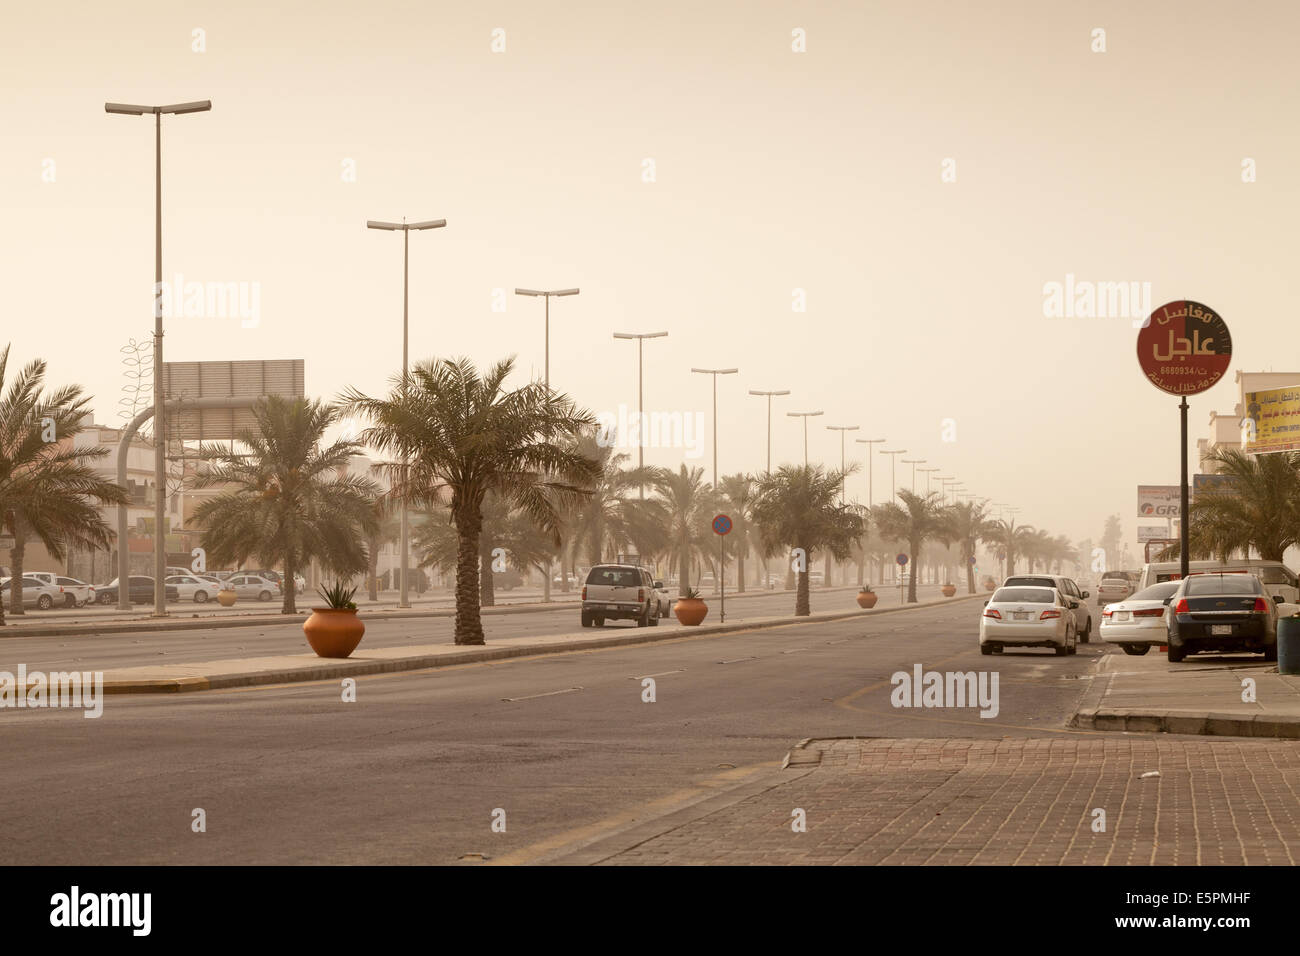 RAHIMA, Arabia Saudita - 11 Maggio 2014: Street view con le automobili e le palme, tempesta di polvere in Arabia Saudita Foto Stock